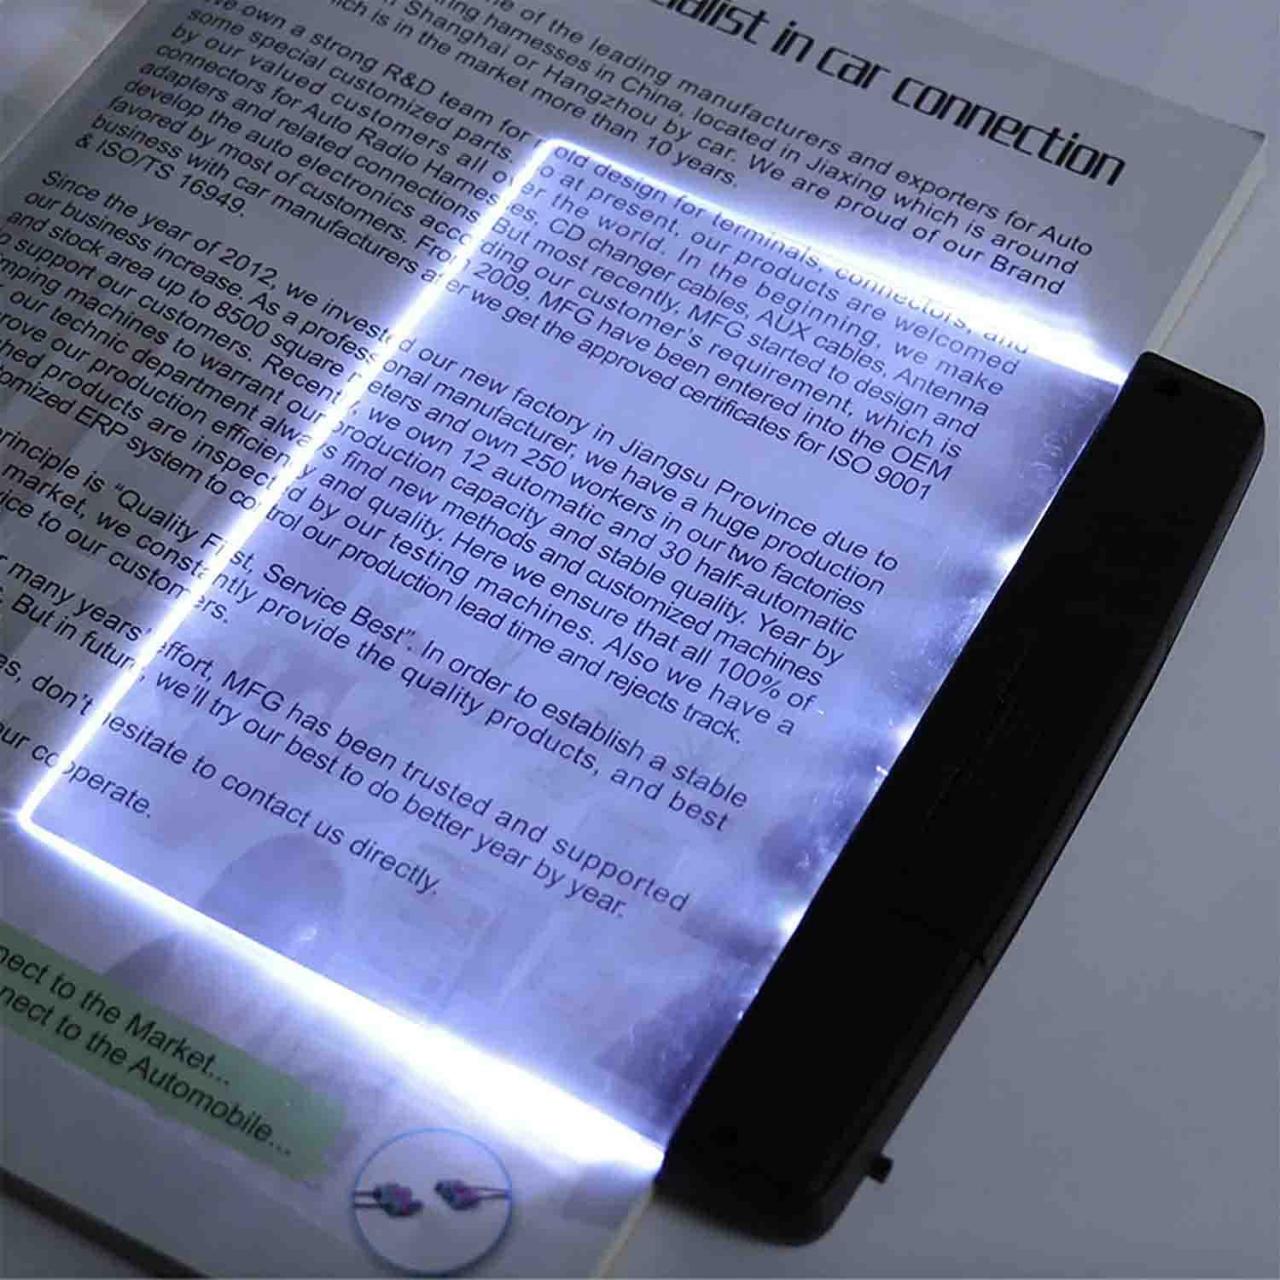 An artificial light book